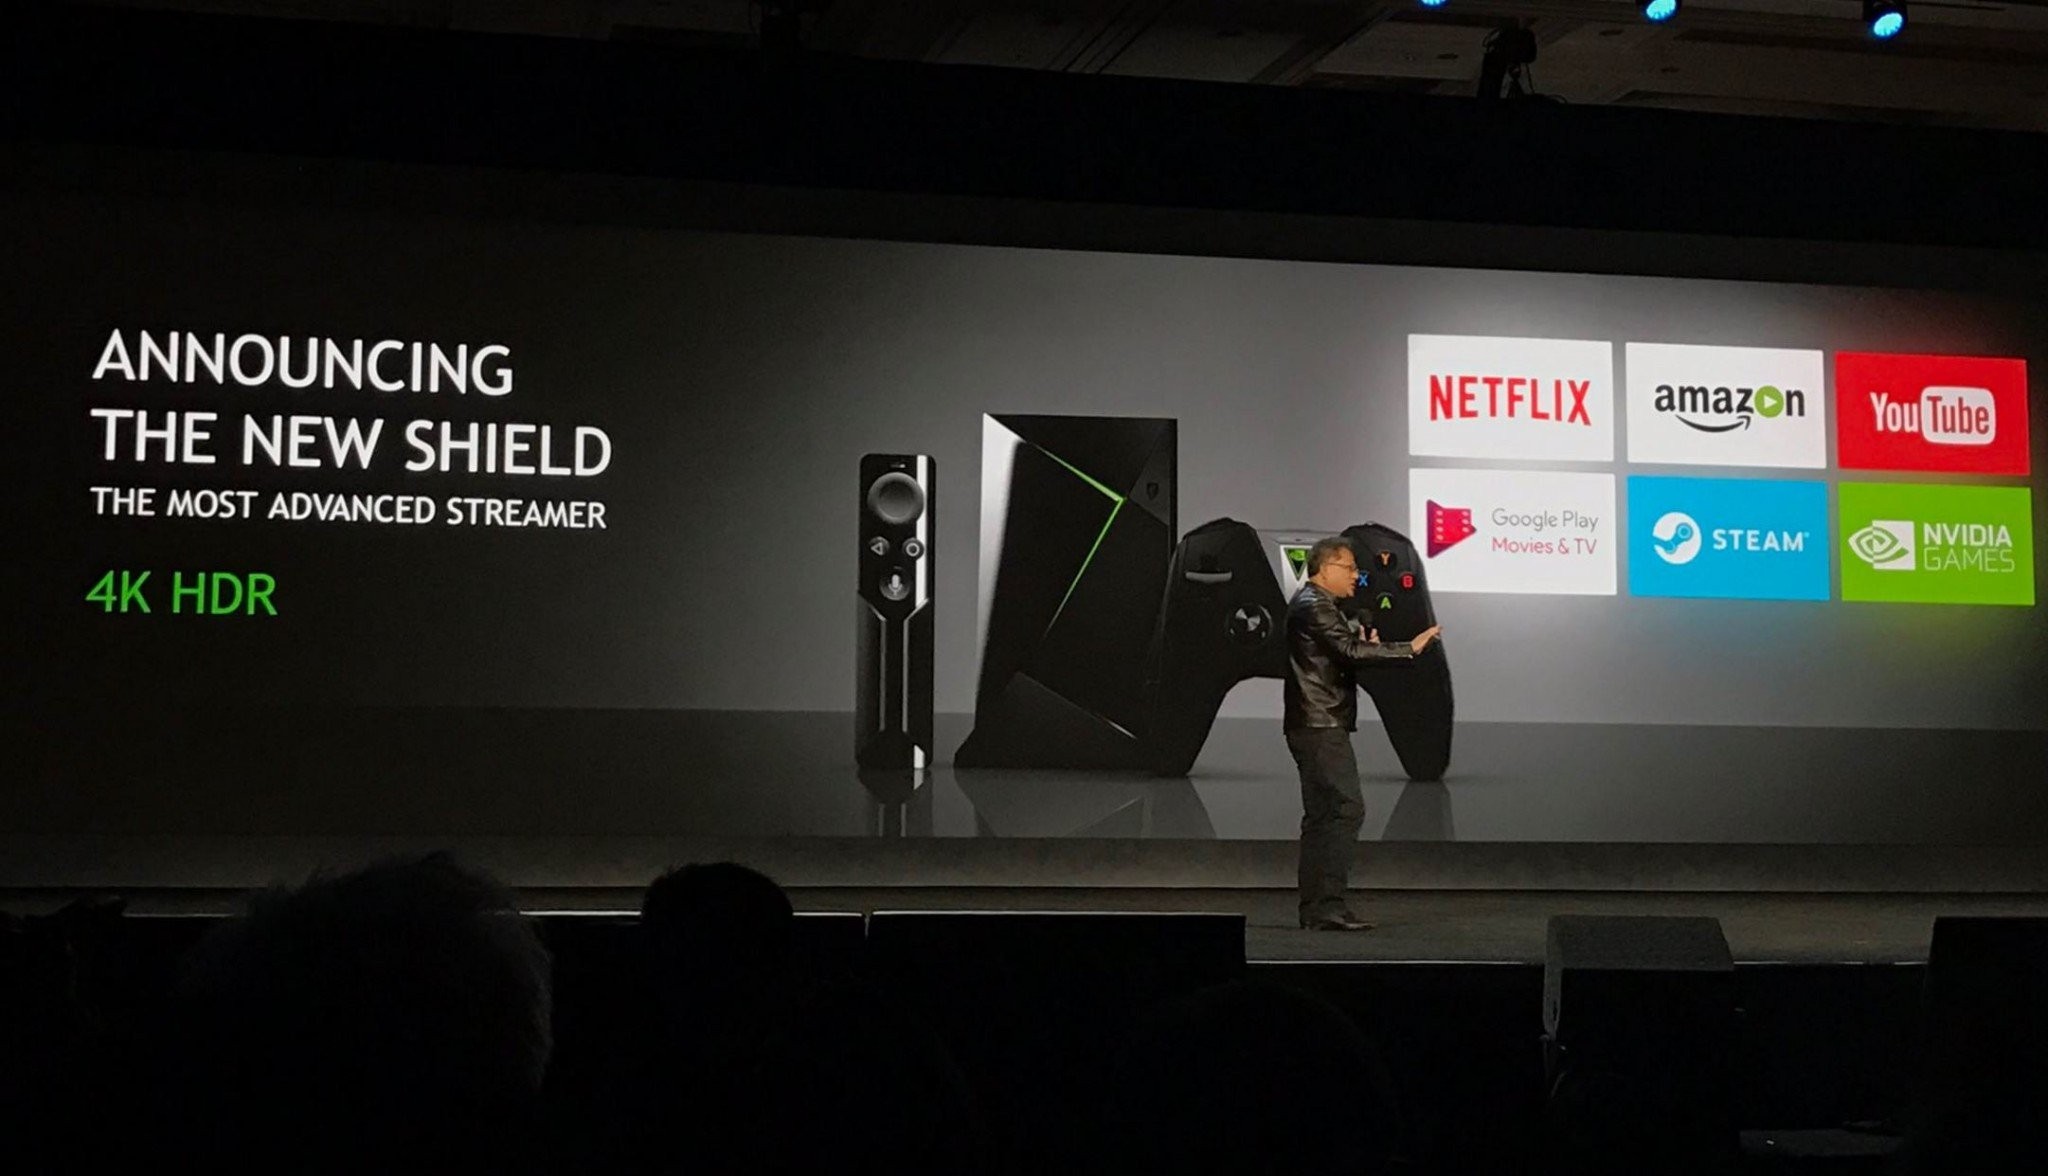 Νέο Nvidia Shield Android TV box με δυνατότητες 4K HDR, game streaming και Google Assistant [CES 2017]